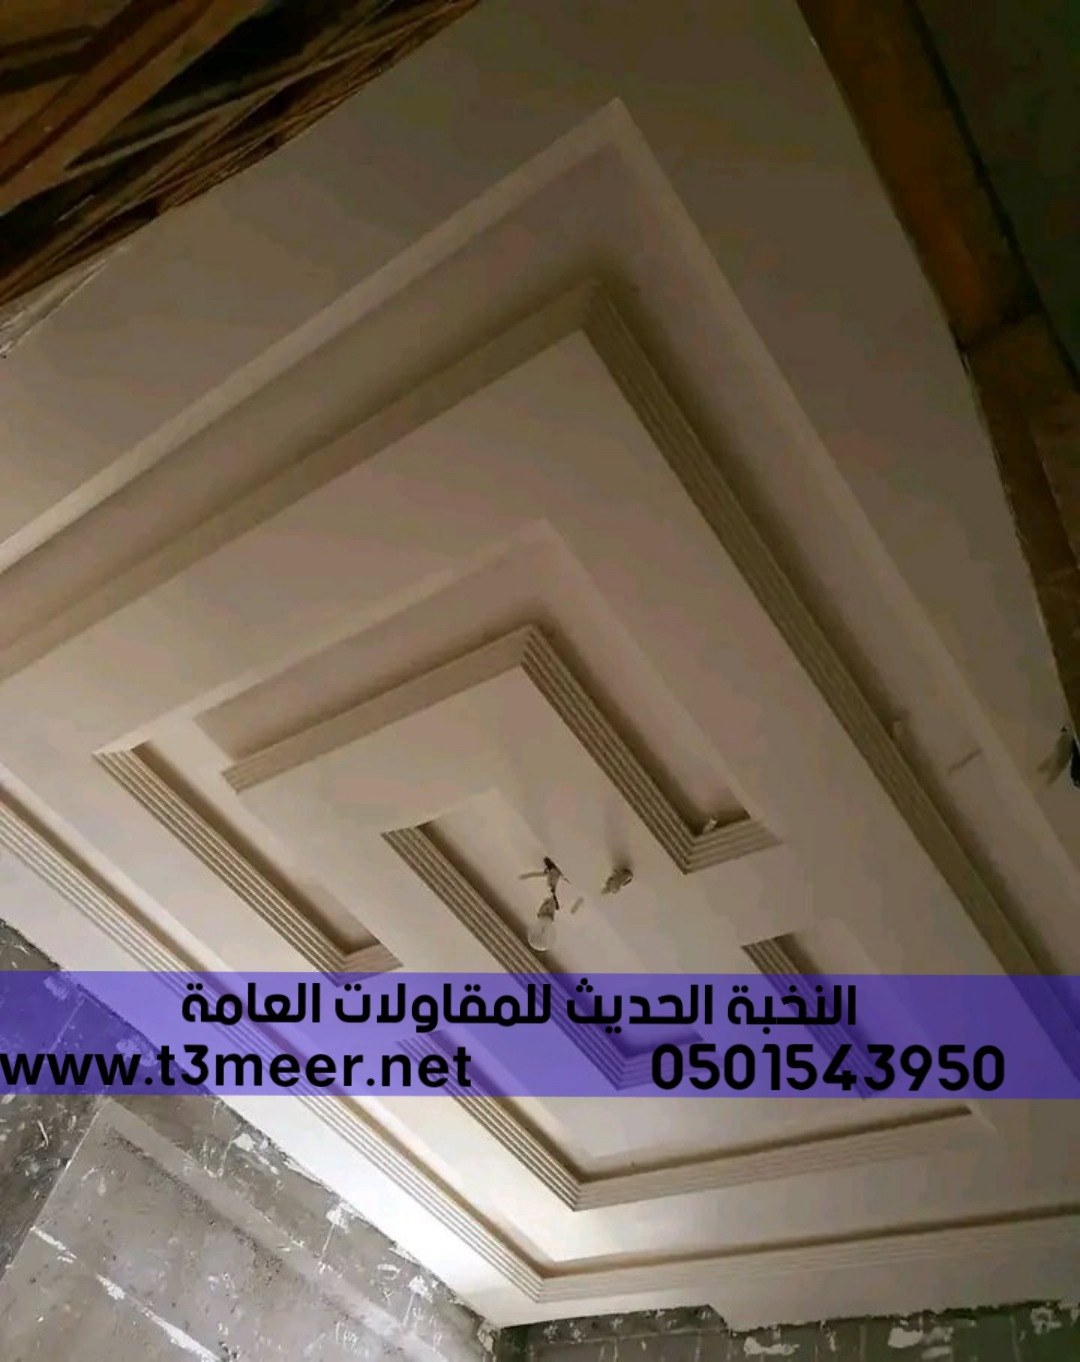 مقاول بناء وترميم في جدة, 0501543950 P_25884fzy54